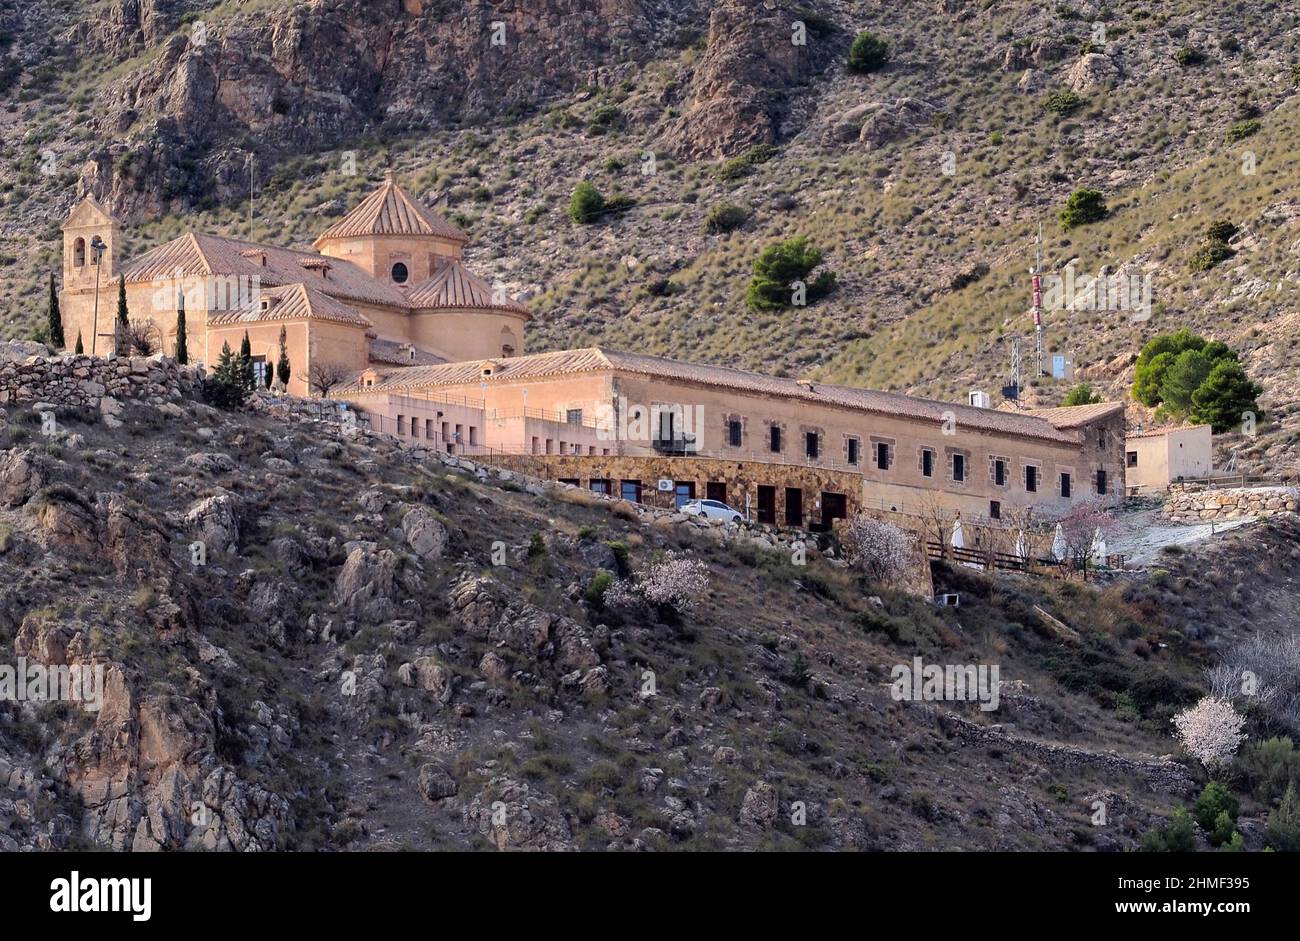 Virgin de Saliente Monastery, general view, Sierra de las Estancias, Andalusia, Spain Stock Photo